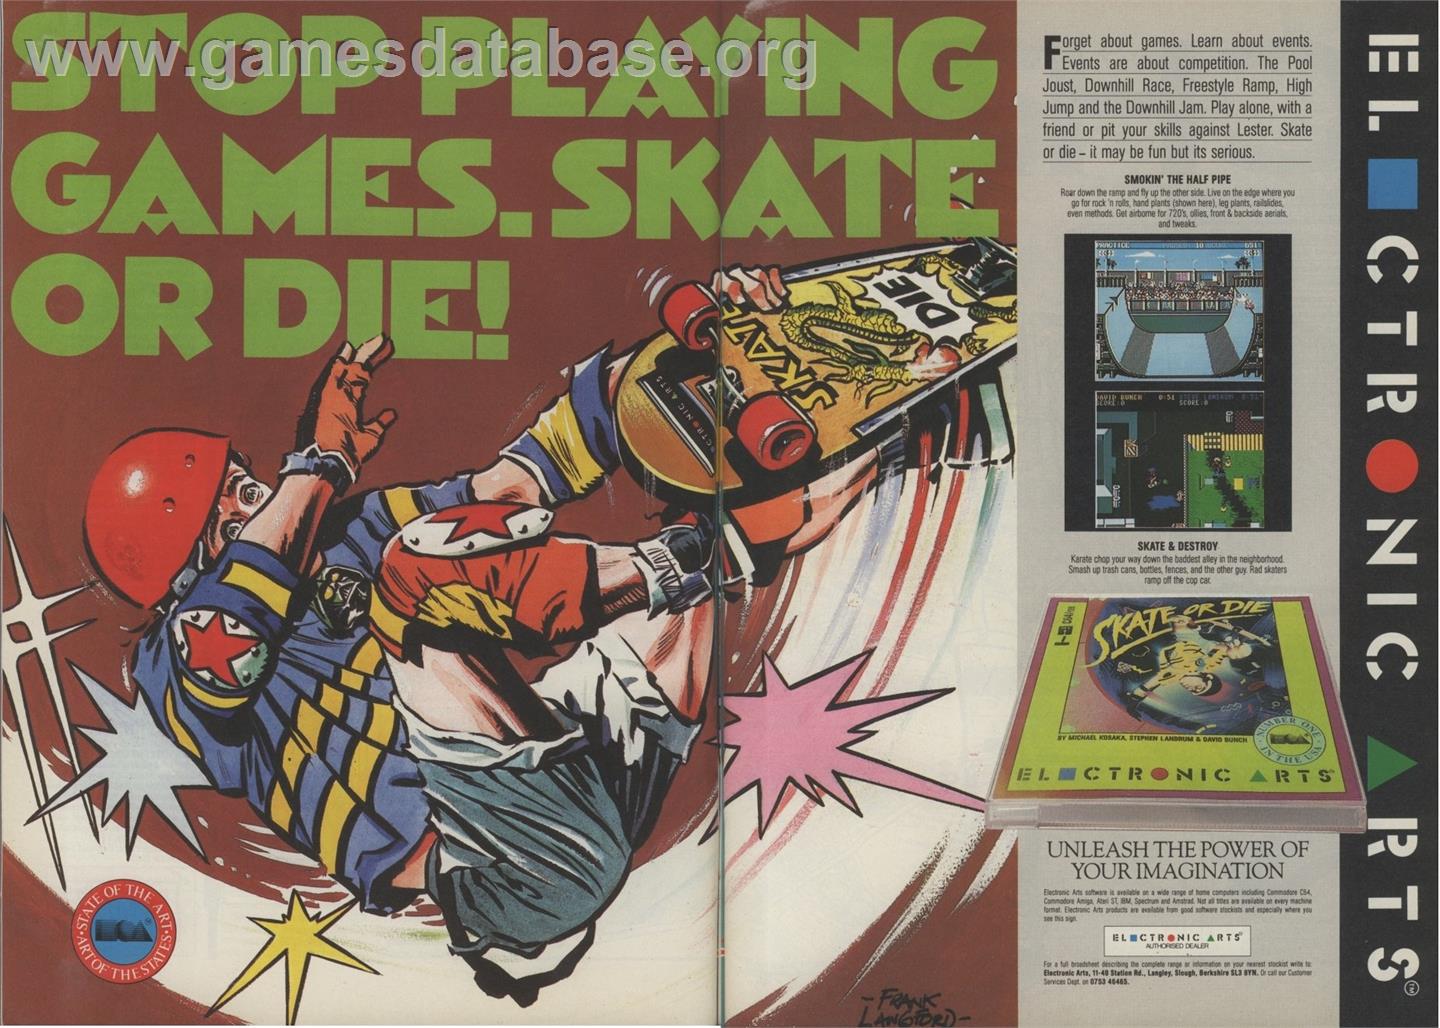 Skate or Die - Amstrad CPC - Artwork - Advert